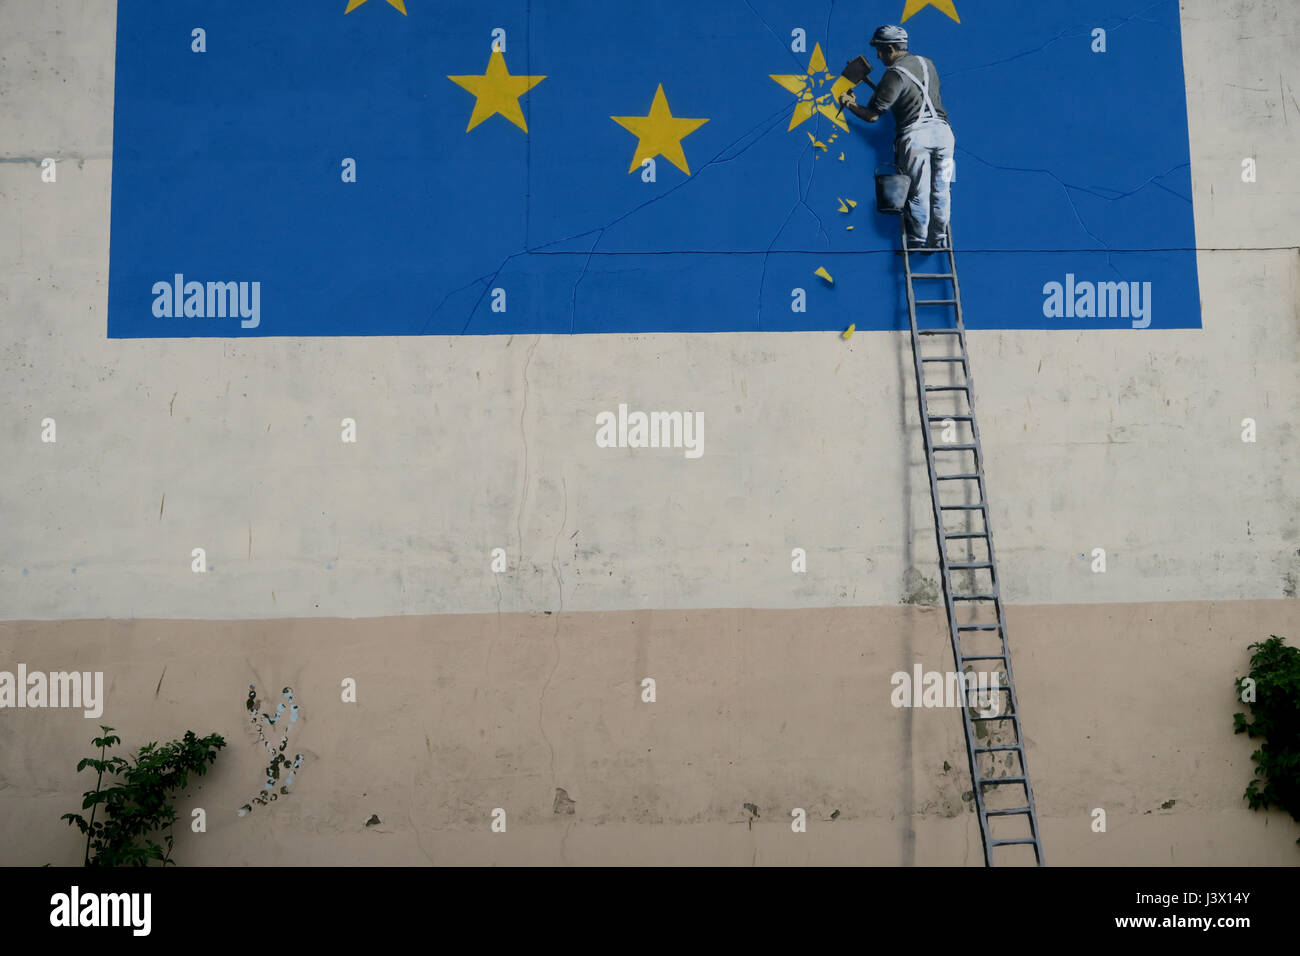 Dover, Royaume-Uni. 7 mai, 2017. Brexit Banksy. Un morceau du street art qui est apparu au cours du week-end 6 mai 2017 dans la région de Dover UK. Affiche une représentation symbolique, par l'artiste Banksy, de Grande-Bretagne briser les liens avec l'Union européenne. Credit : Pics4view/Alamy Live News Banque D'Images